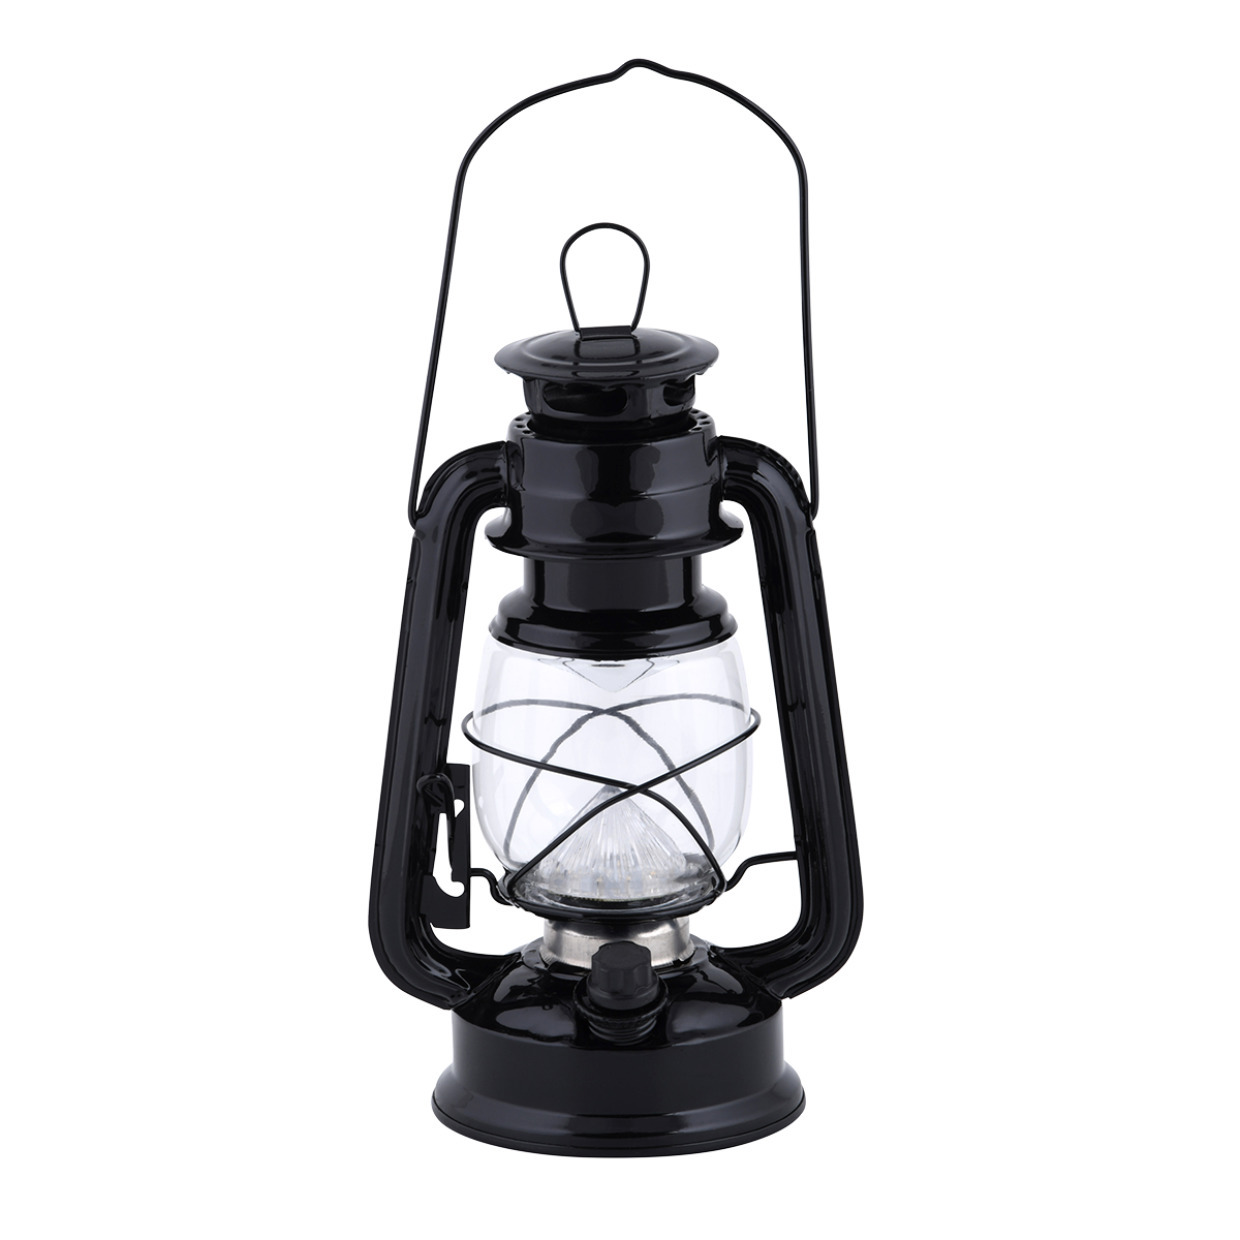 LED lantaarn-windlicht zwart op batterijen 11,5 x 15 x 24 cm